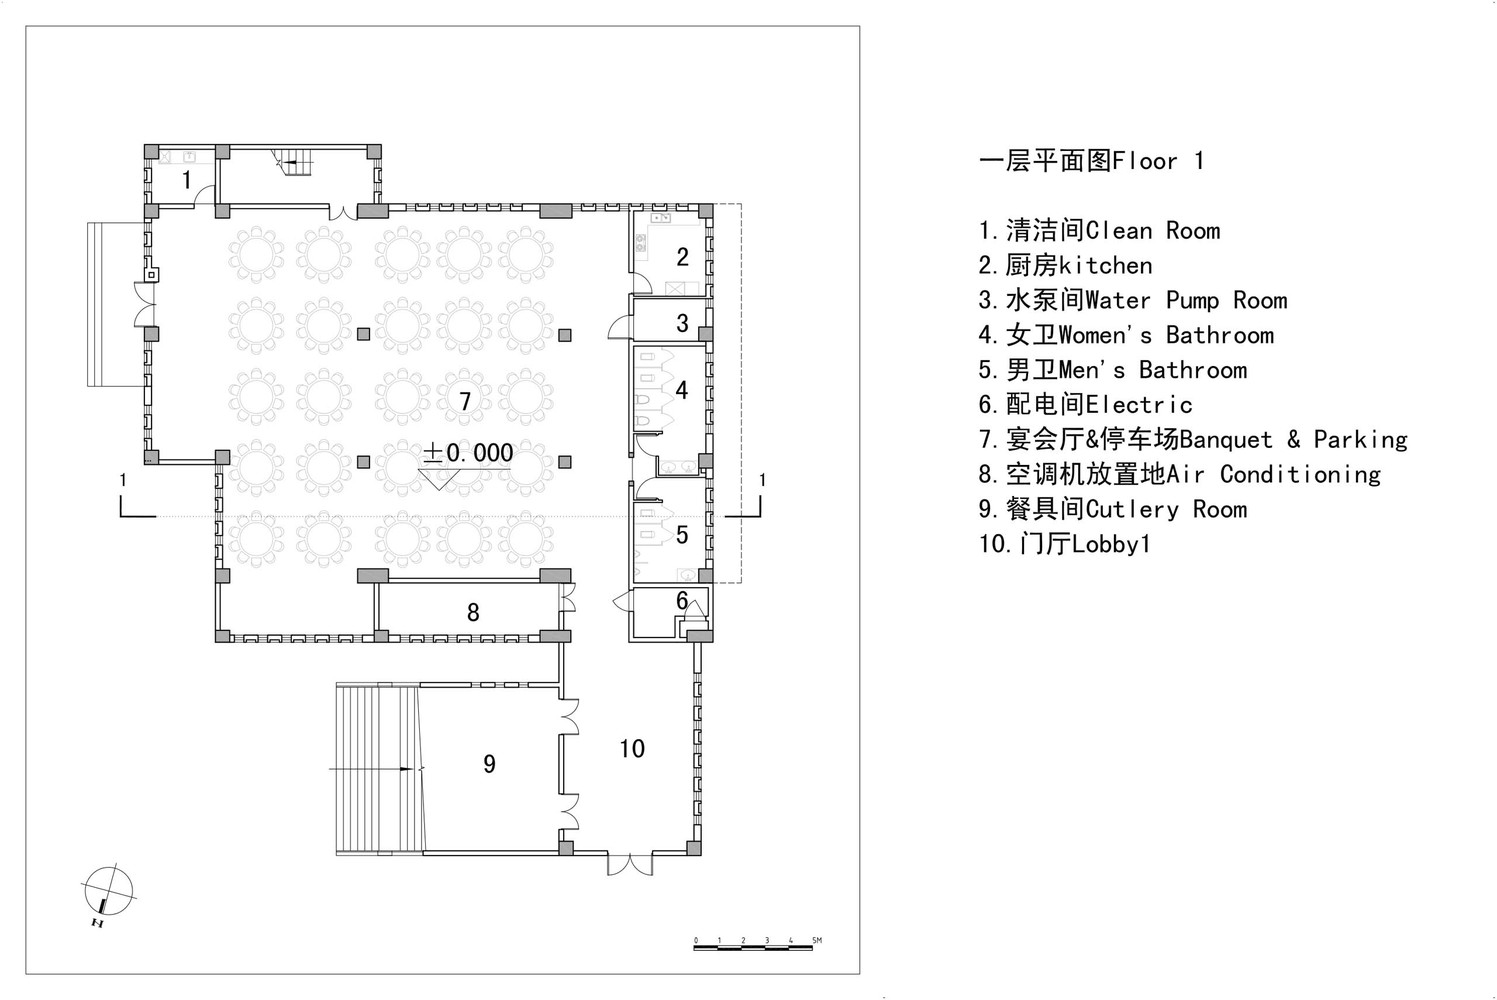 3.乡恋·信仰——滩涂边上的教堂技术图纸_0_split.jpg